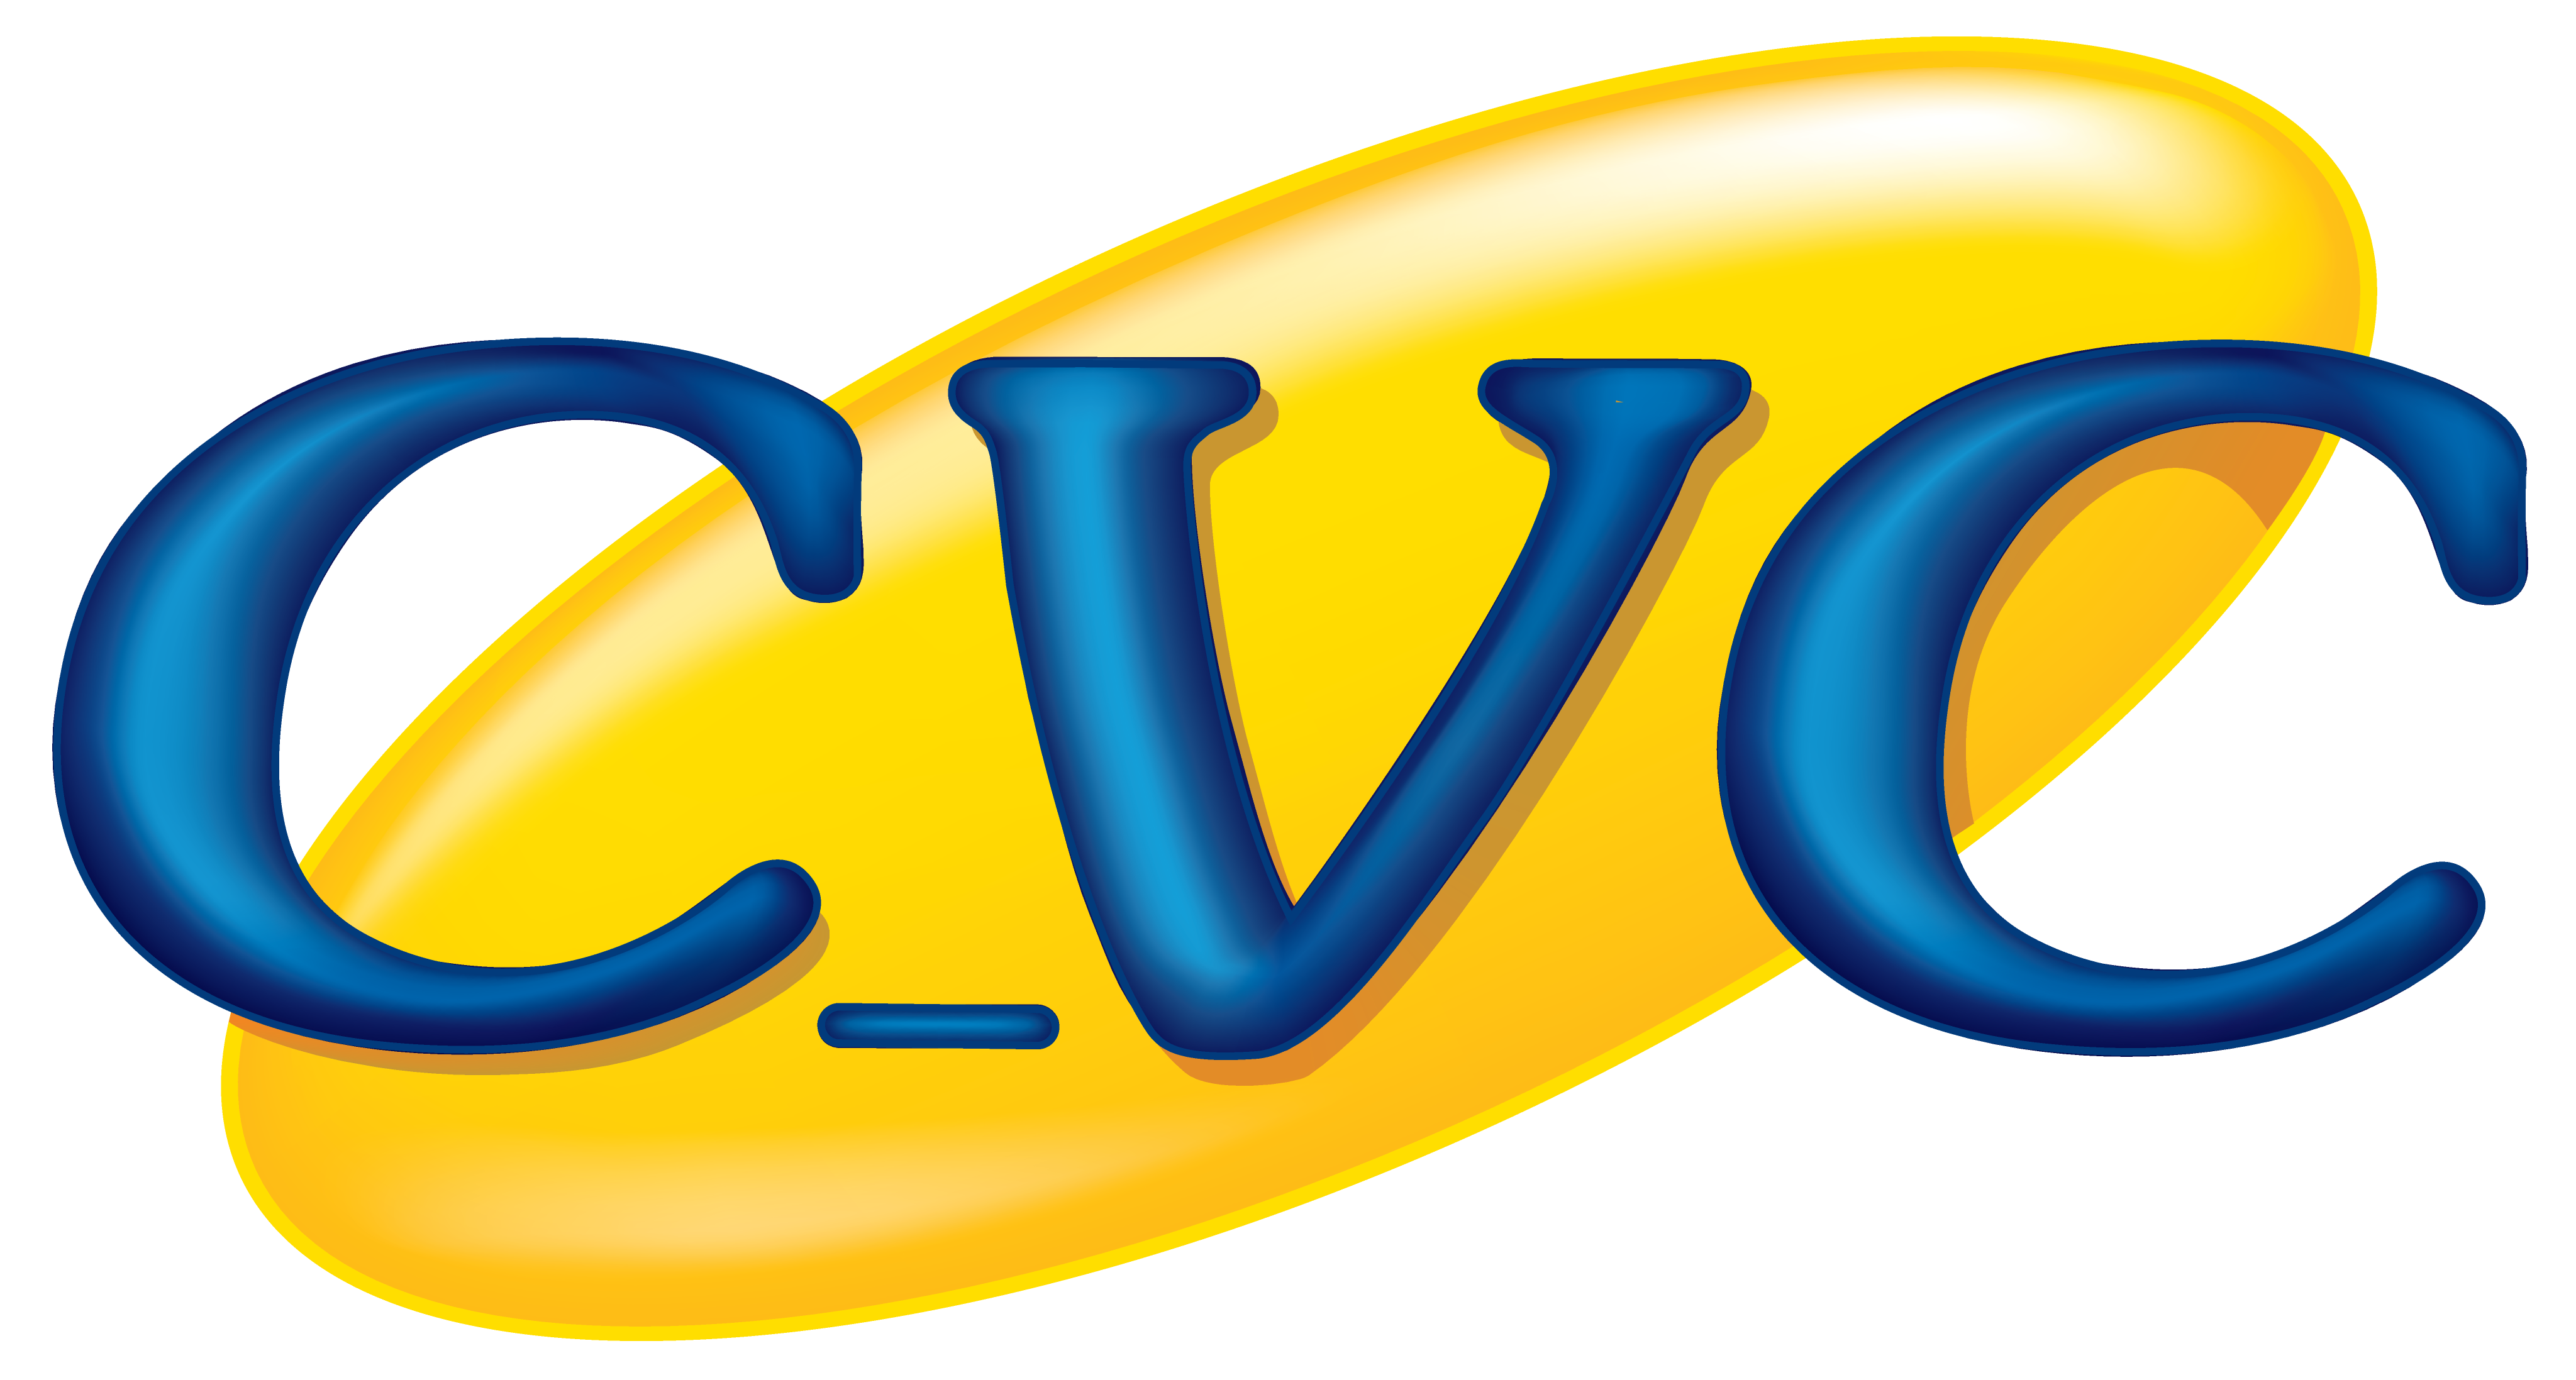 cvc